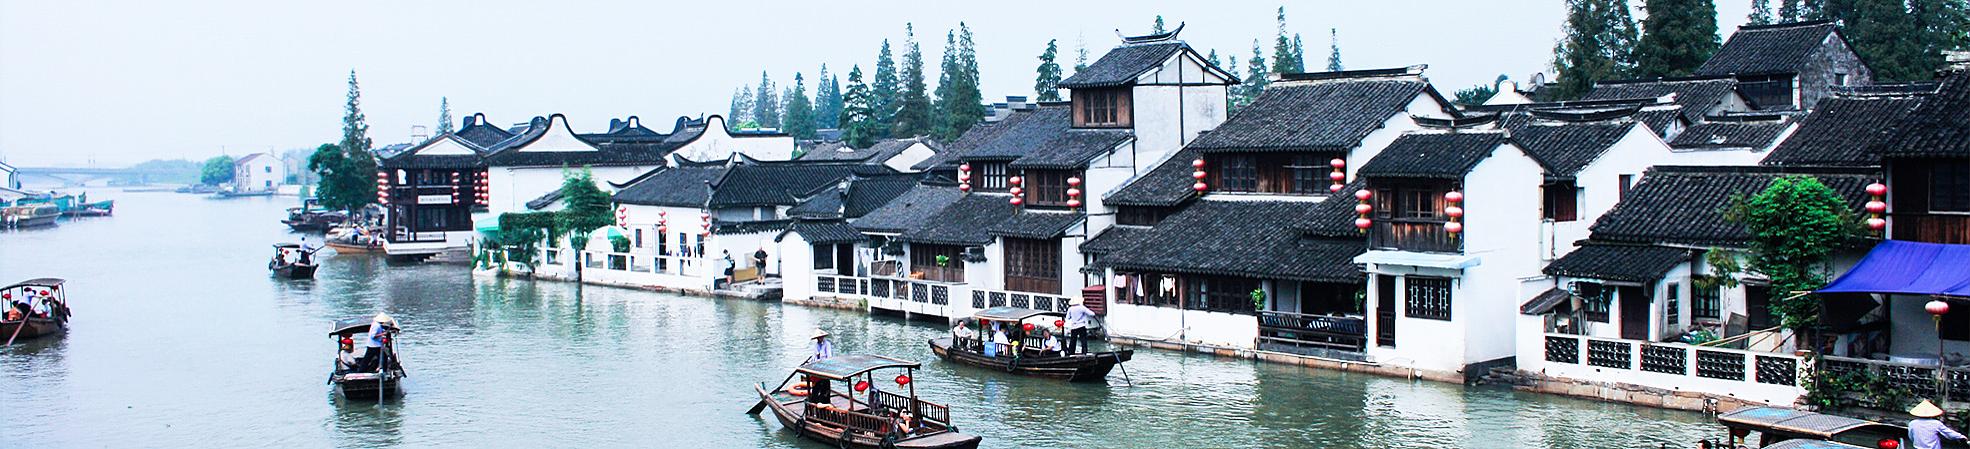 Zhujiajiao of Shanghai - Chinese Water Town